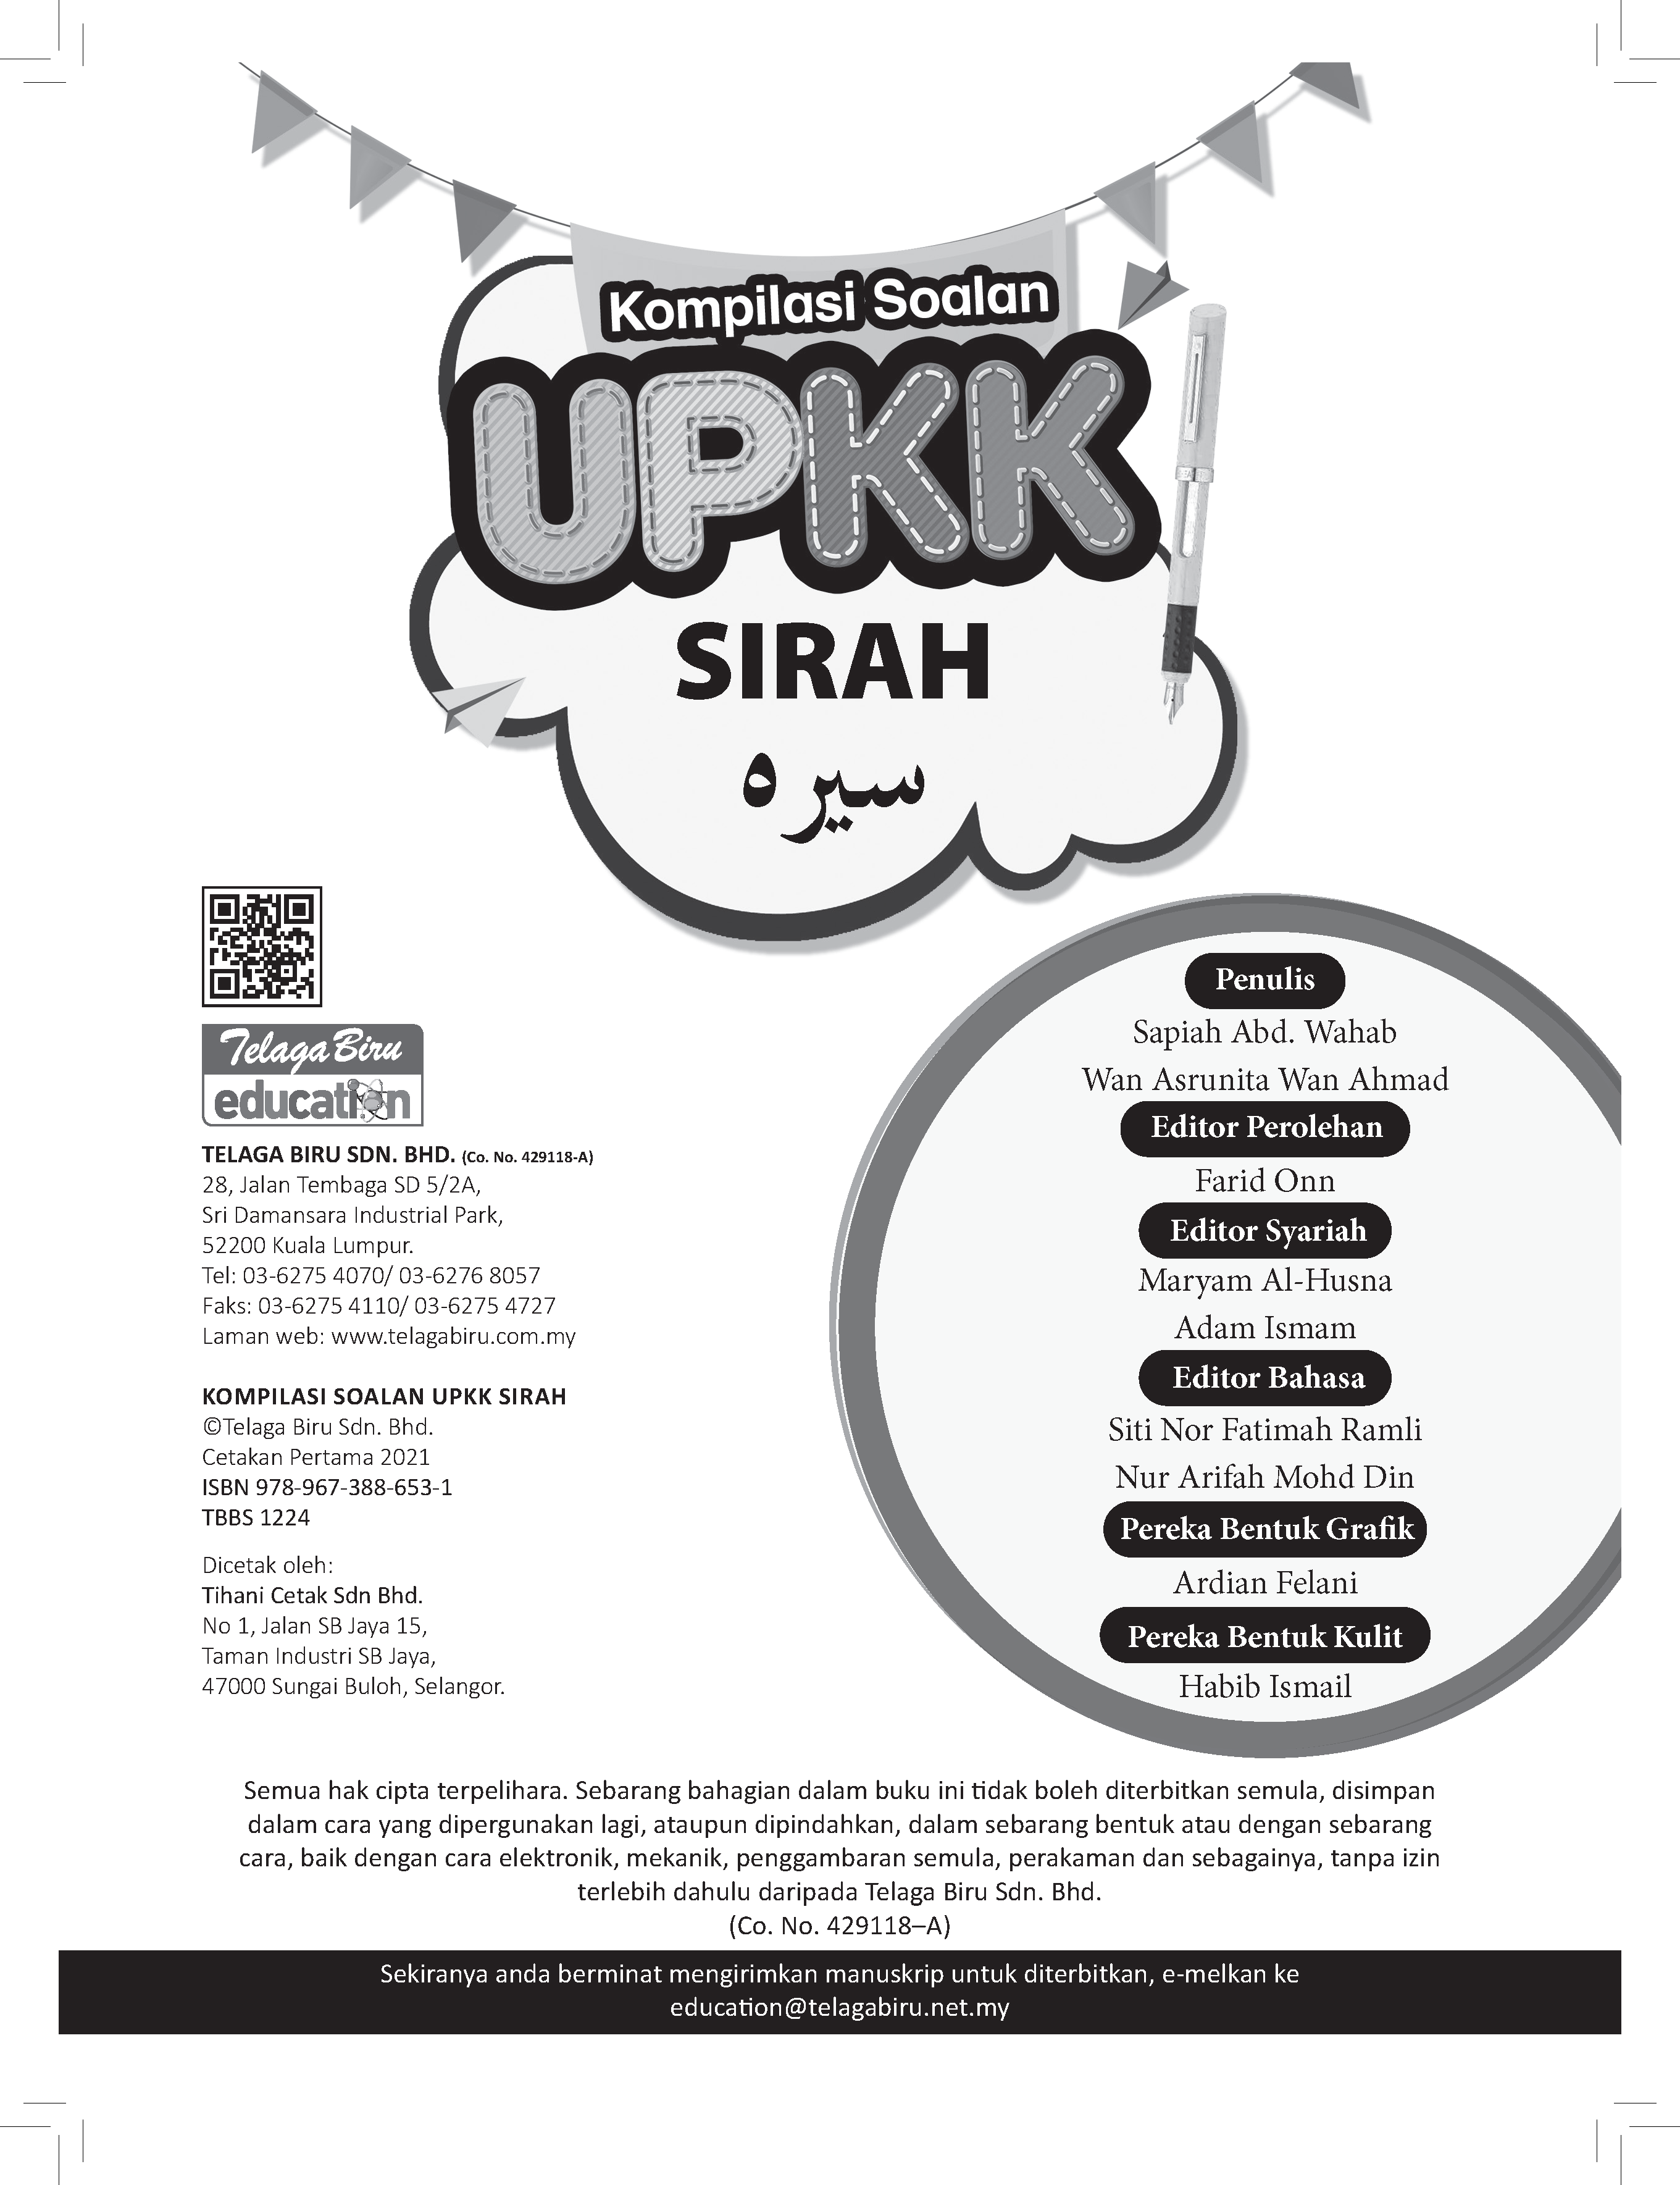 Kompilasi Soalan UPKK (Sirah) - (TBBS1224)